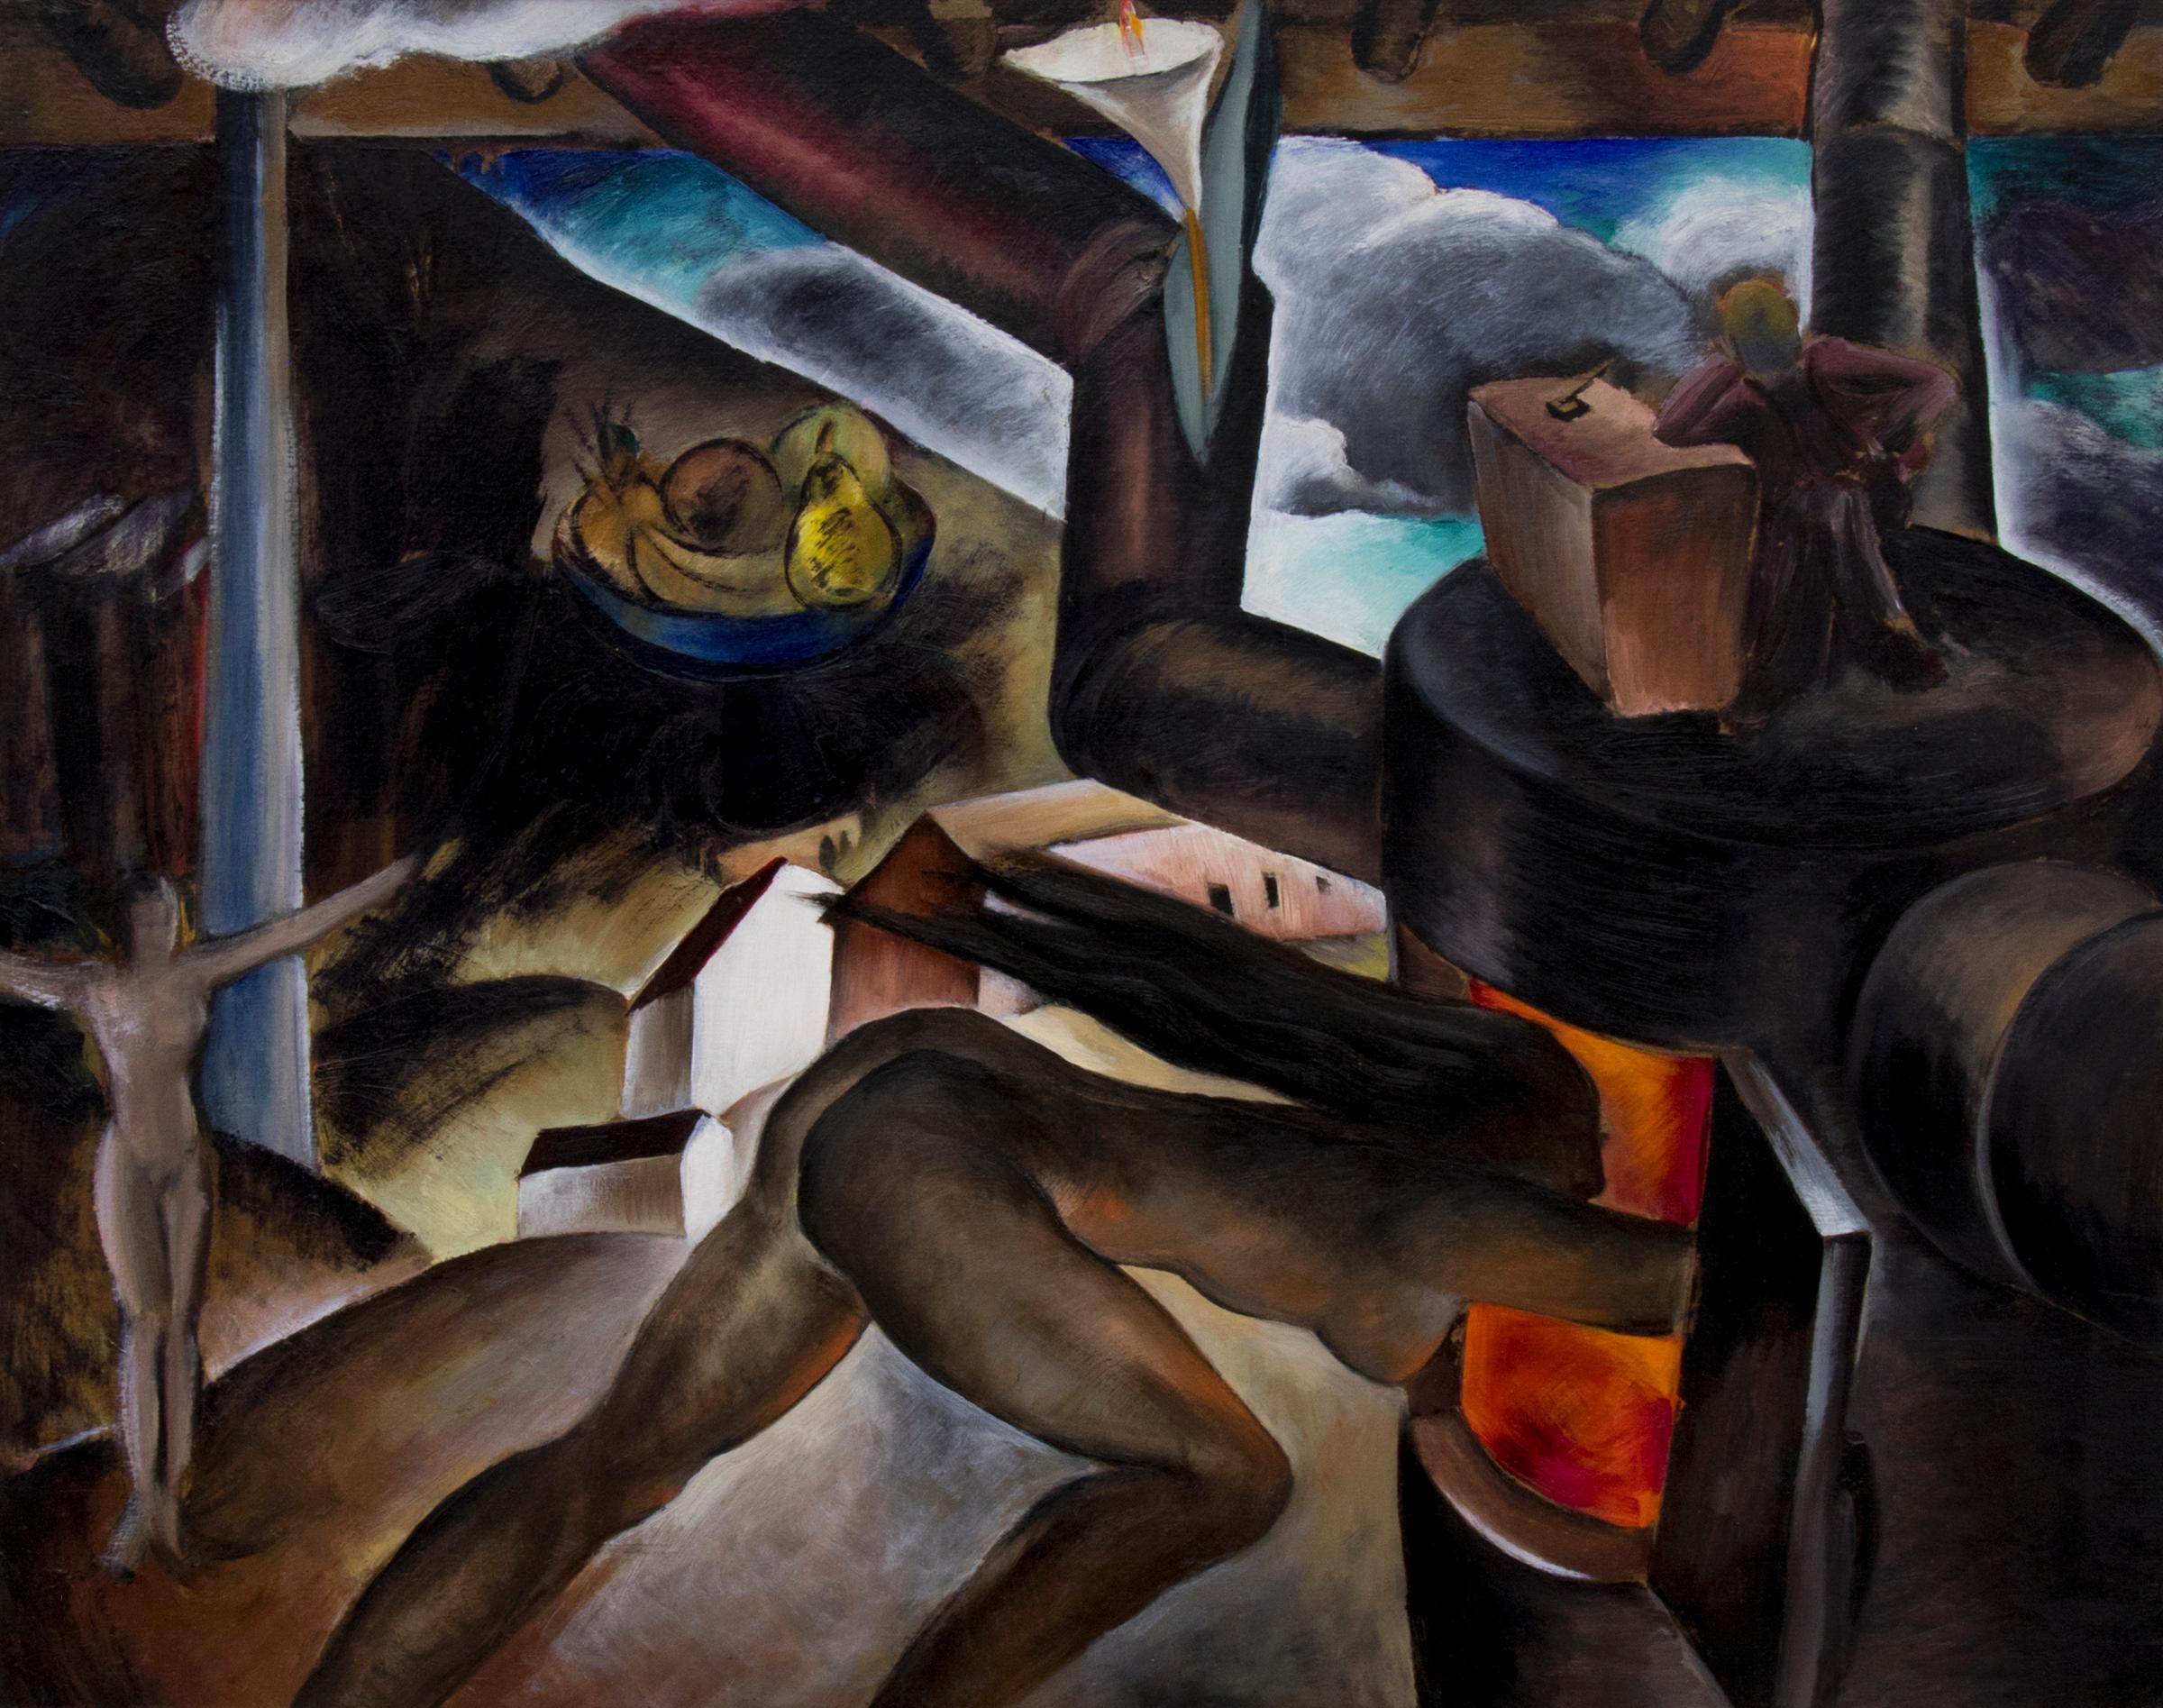 Femme nue surréaliste dans un paysage industriel, peinture à l'huile moderne des années 1930 - Painting de Virginia True